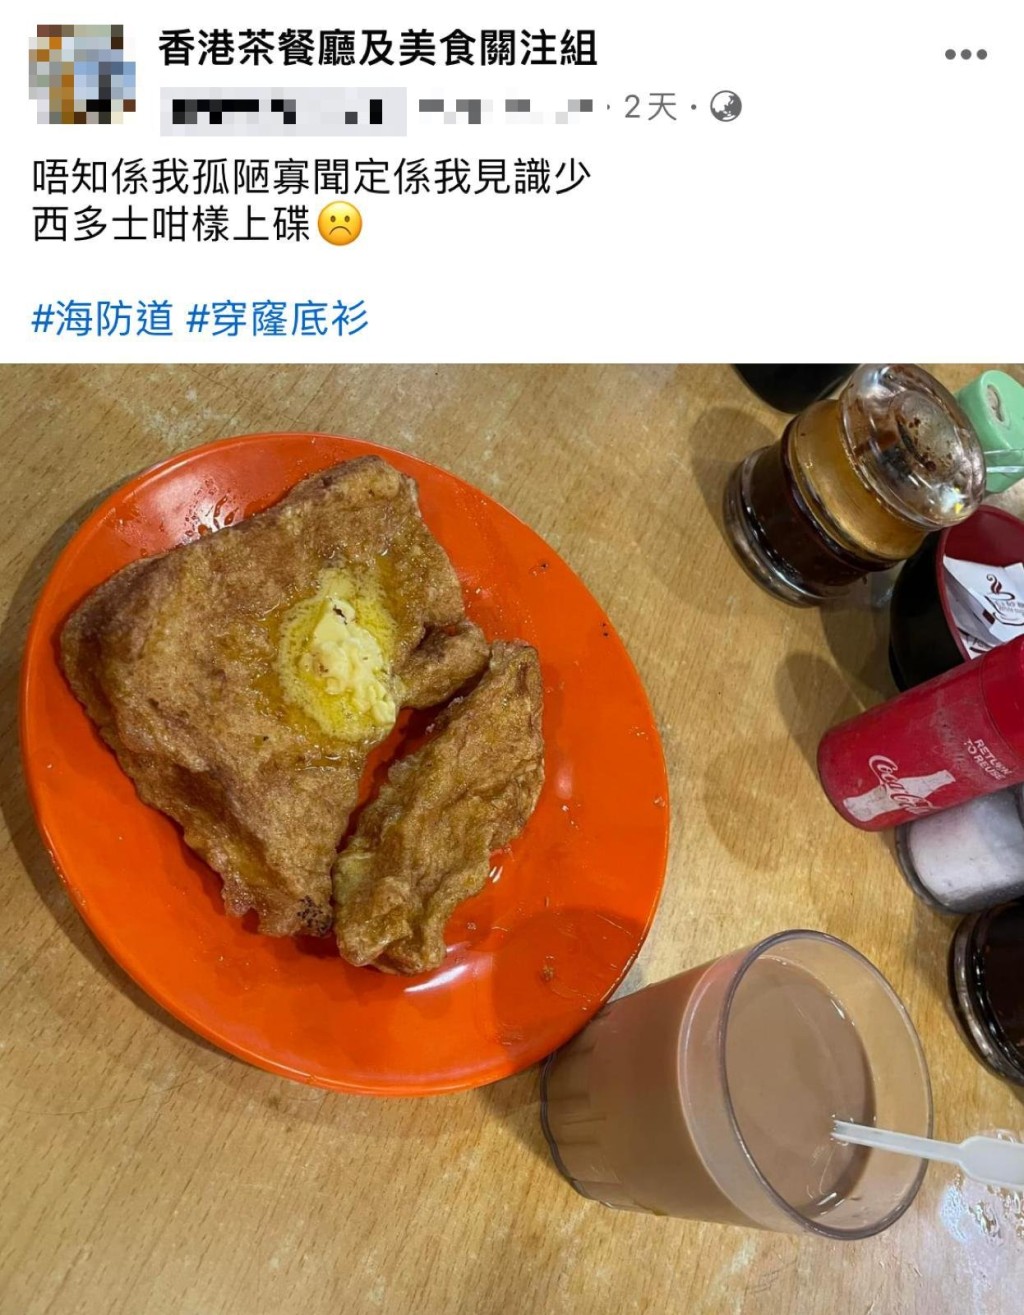 有網民在尖沙咀海防道街市熟食中心茶檔食西多士，卻發現其賣相「獨特」，遂在facebook群組「香港茶餐廳及美食關注組」發帖求問。